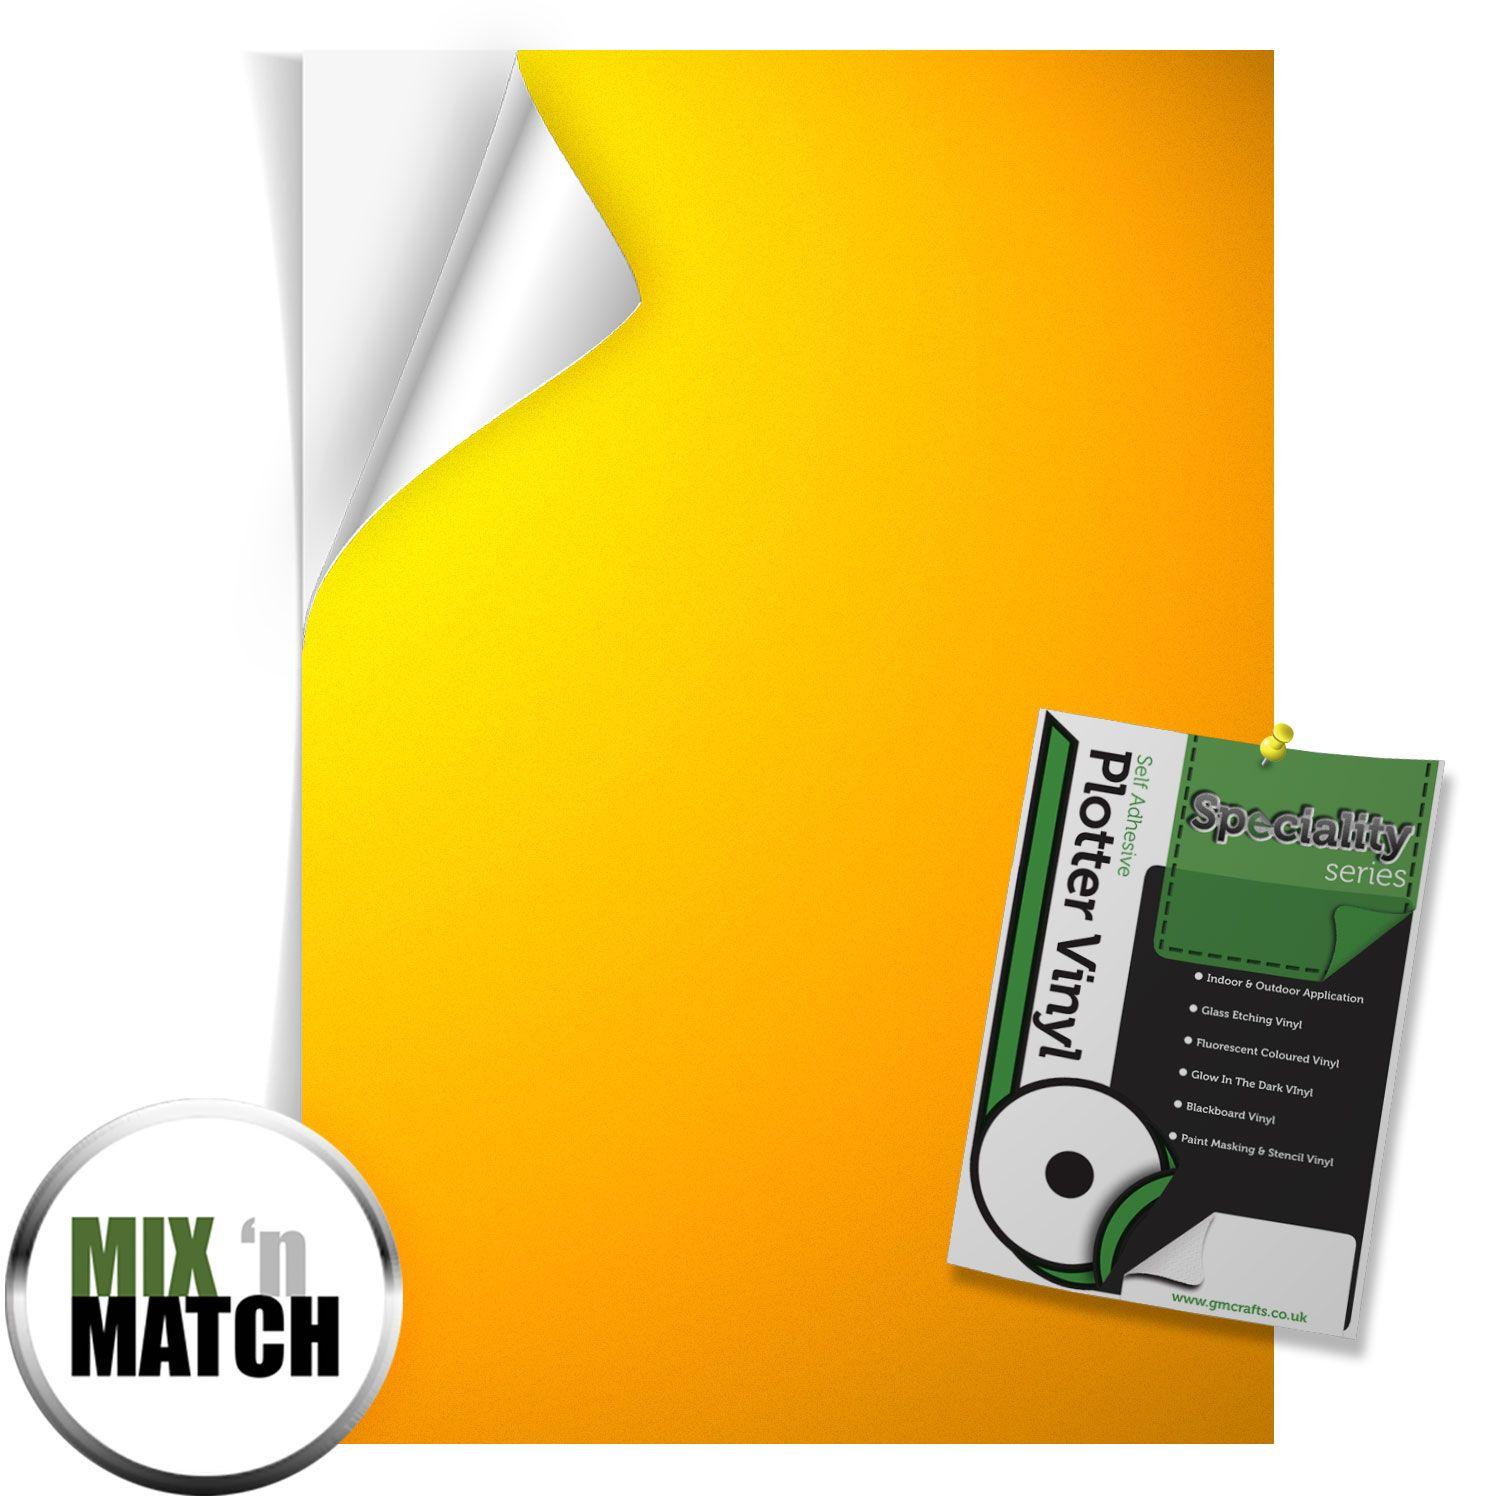 Download Yellow Sheets Of Paper Logo Logodix PSD Mockup Templates